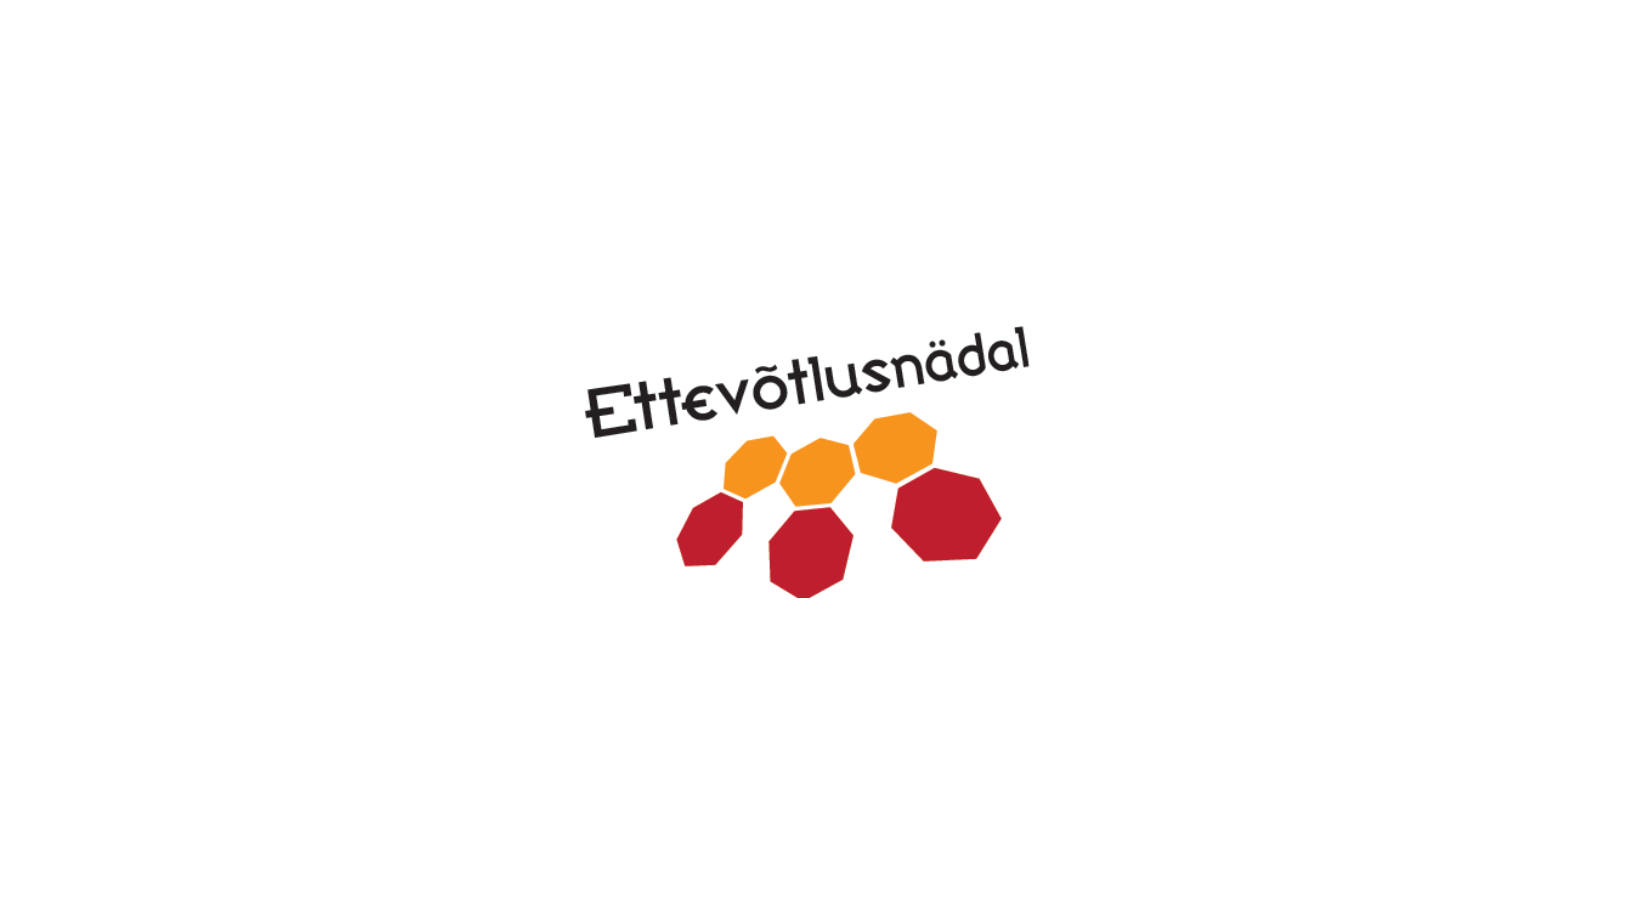 Ettevõtlusnädal logo